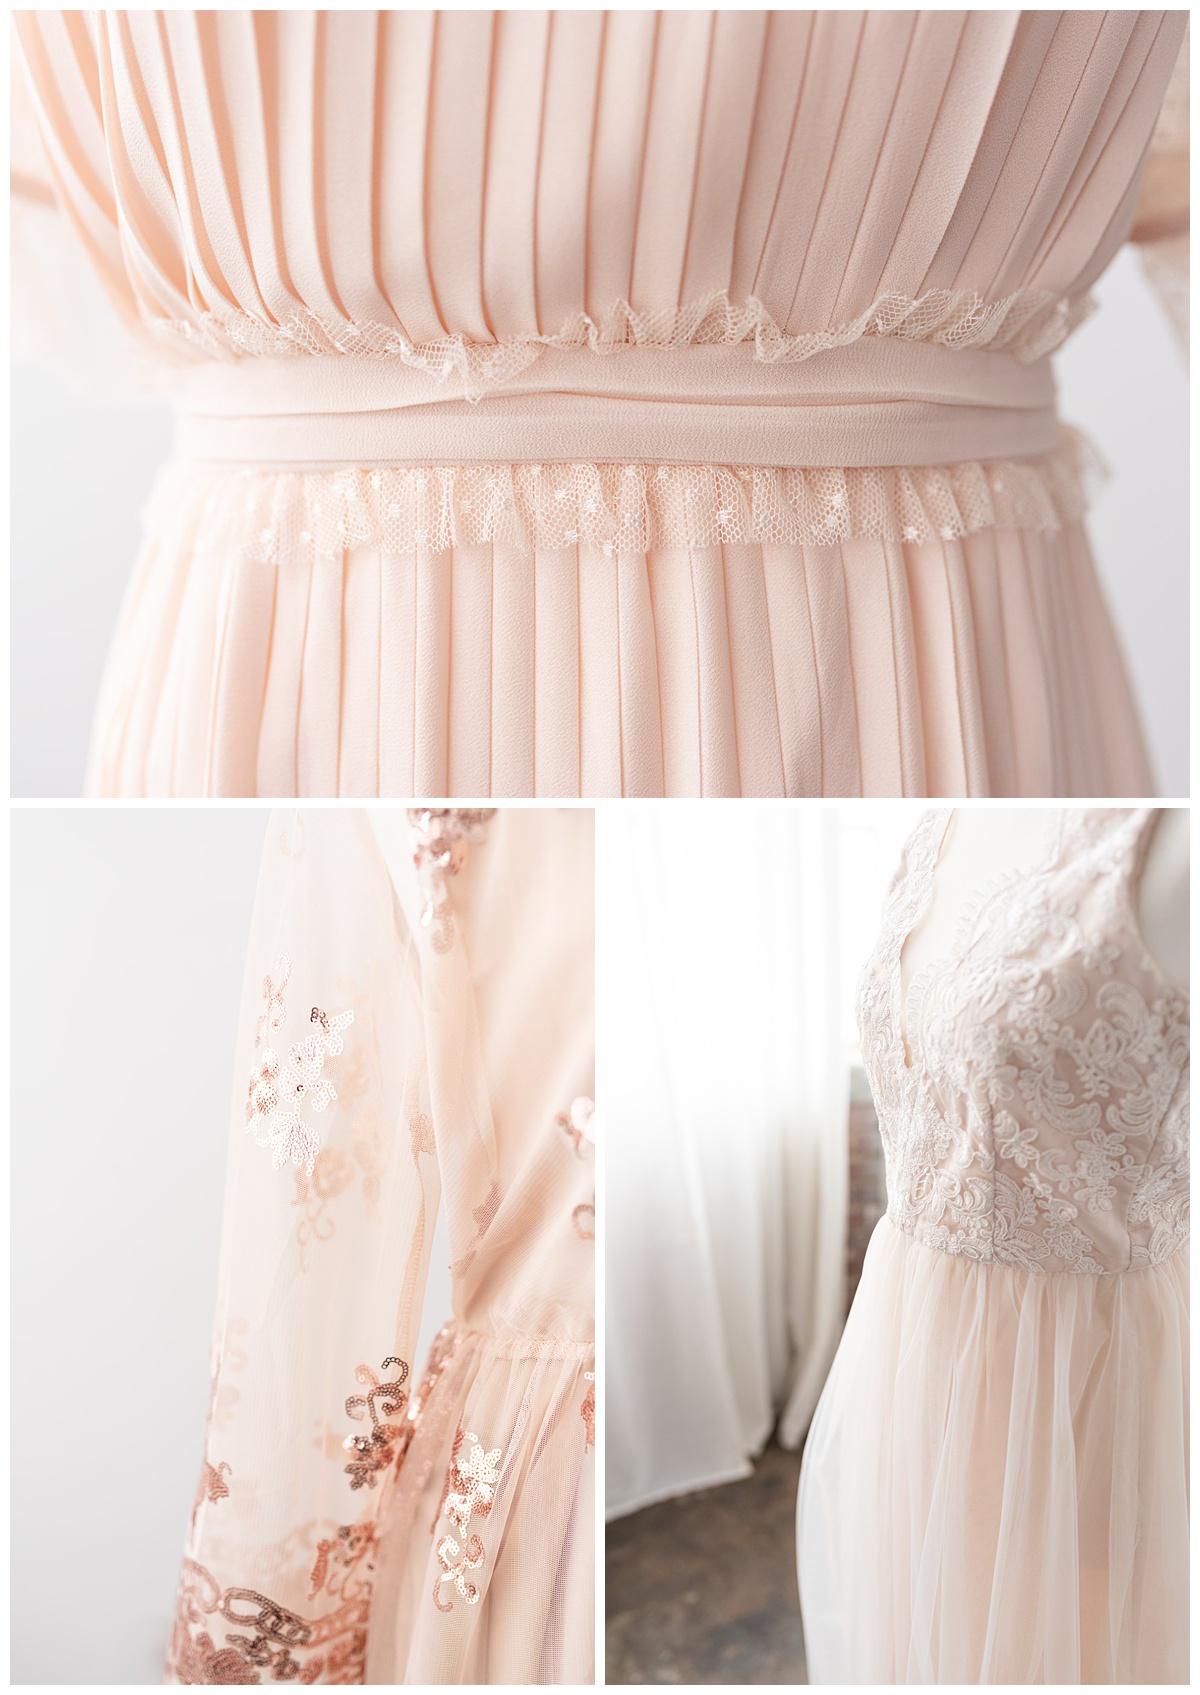 cream dress details in studio wardrobe